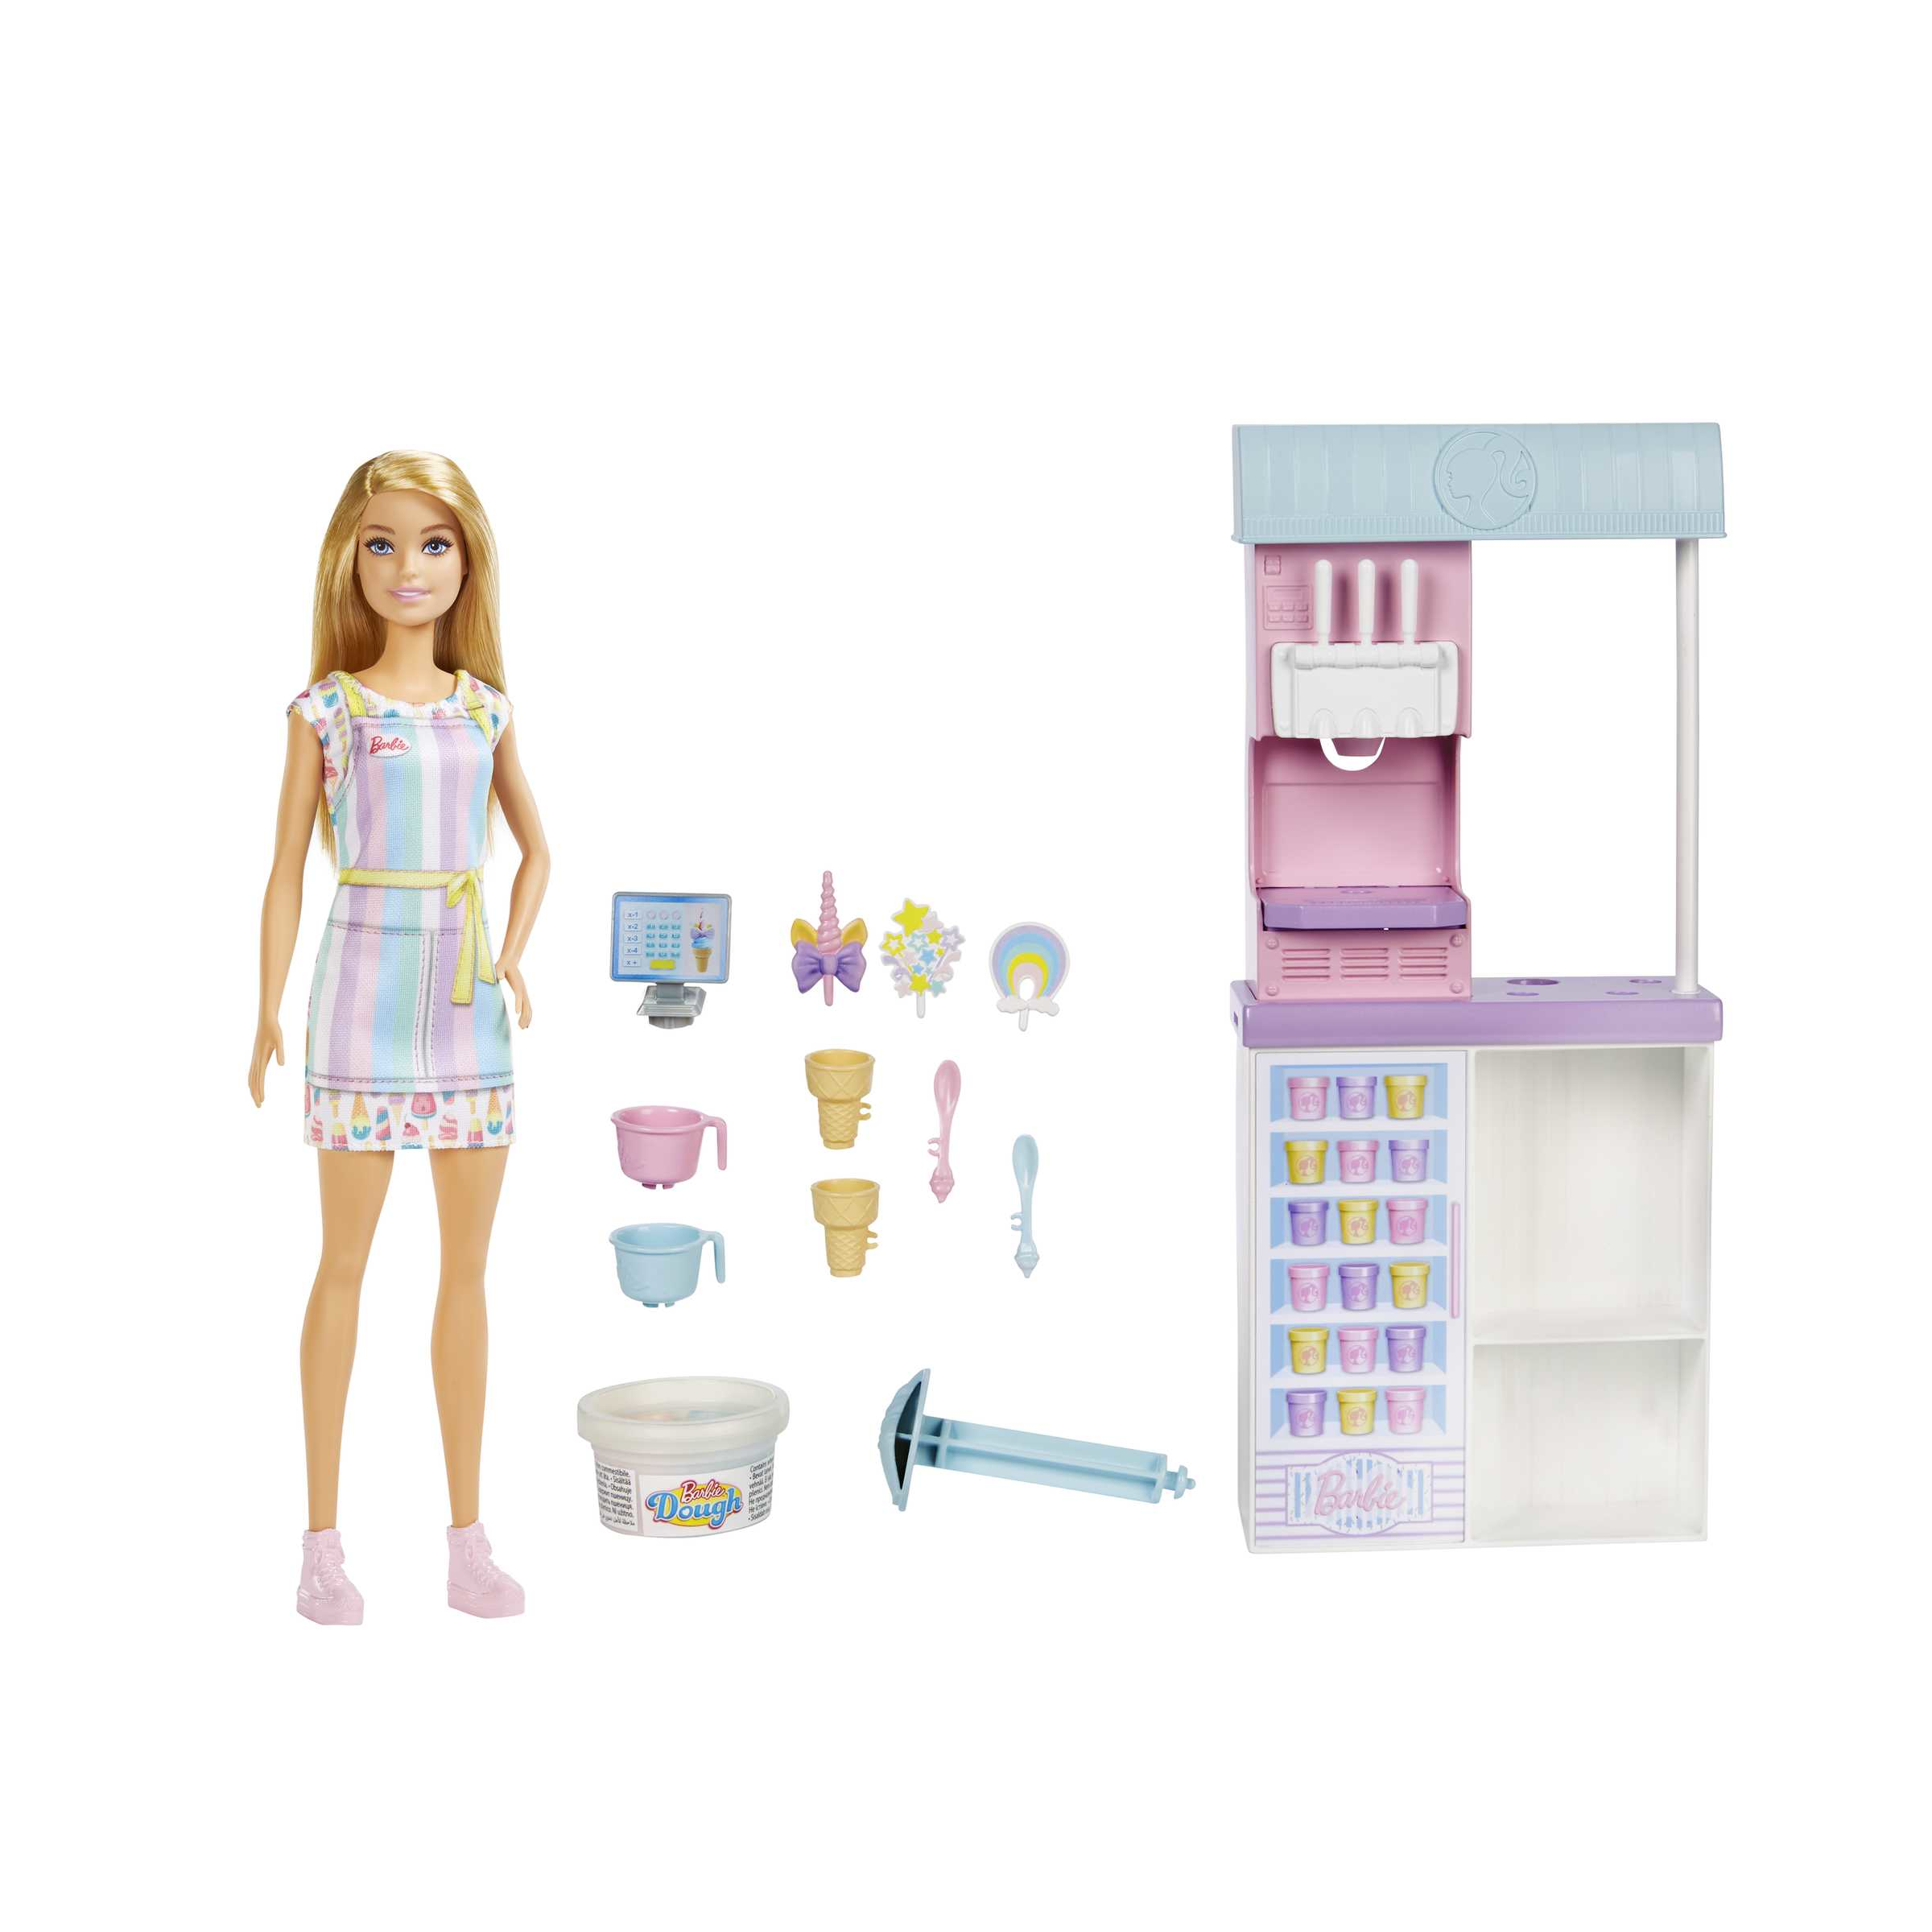 Barbie, playset gelateria con bambola bionda, macchina per fare il gelato, giocattolo per bambini 4+ anni - Barbie